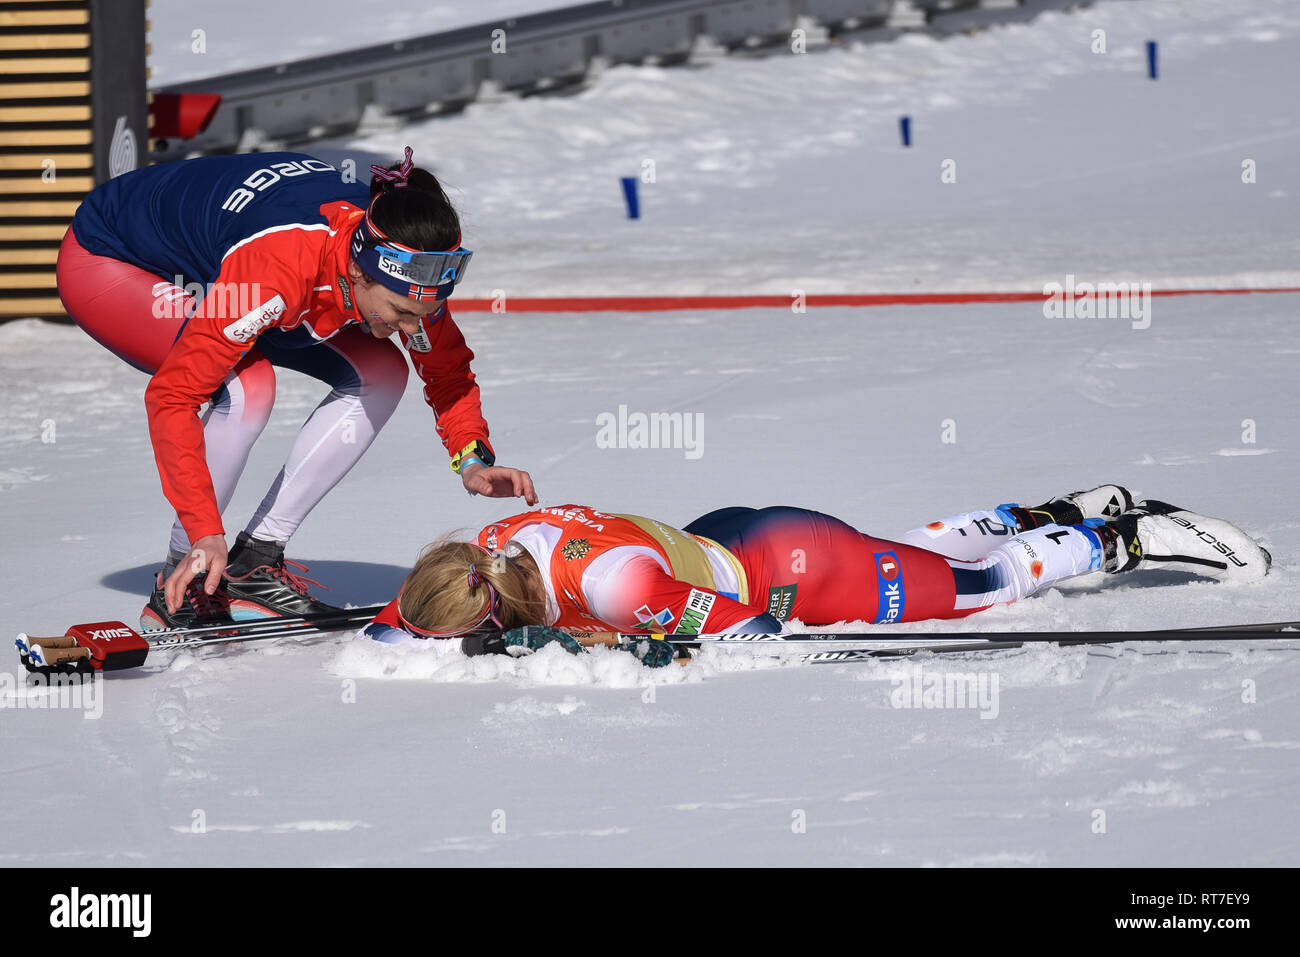 Seefeld, Autriche, 28 février 2019. Quelle était sa température ? Si chaud que le skieur numéro 1 de l'équipe de ski norvégienne, Therese Johaug, a immédiatement plongé dans la neige après avoir terminé la jambe d'ancrage du relais féminin aux championnats du monde nordique. Les températures étaient dans les années 50 F. la Norvège a terminé deuxième. Heidi Weng, coéquipier, approche de Johaug. © John Lazenby/Alay Live News. Banque D'Images